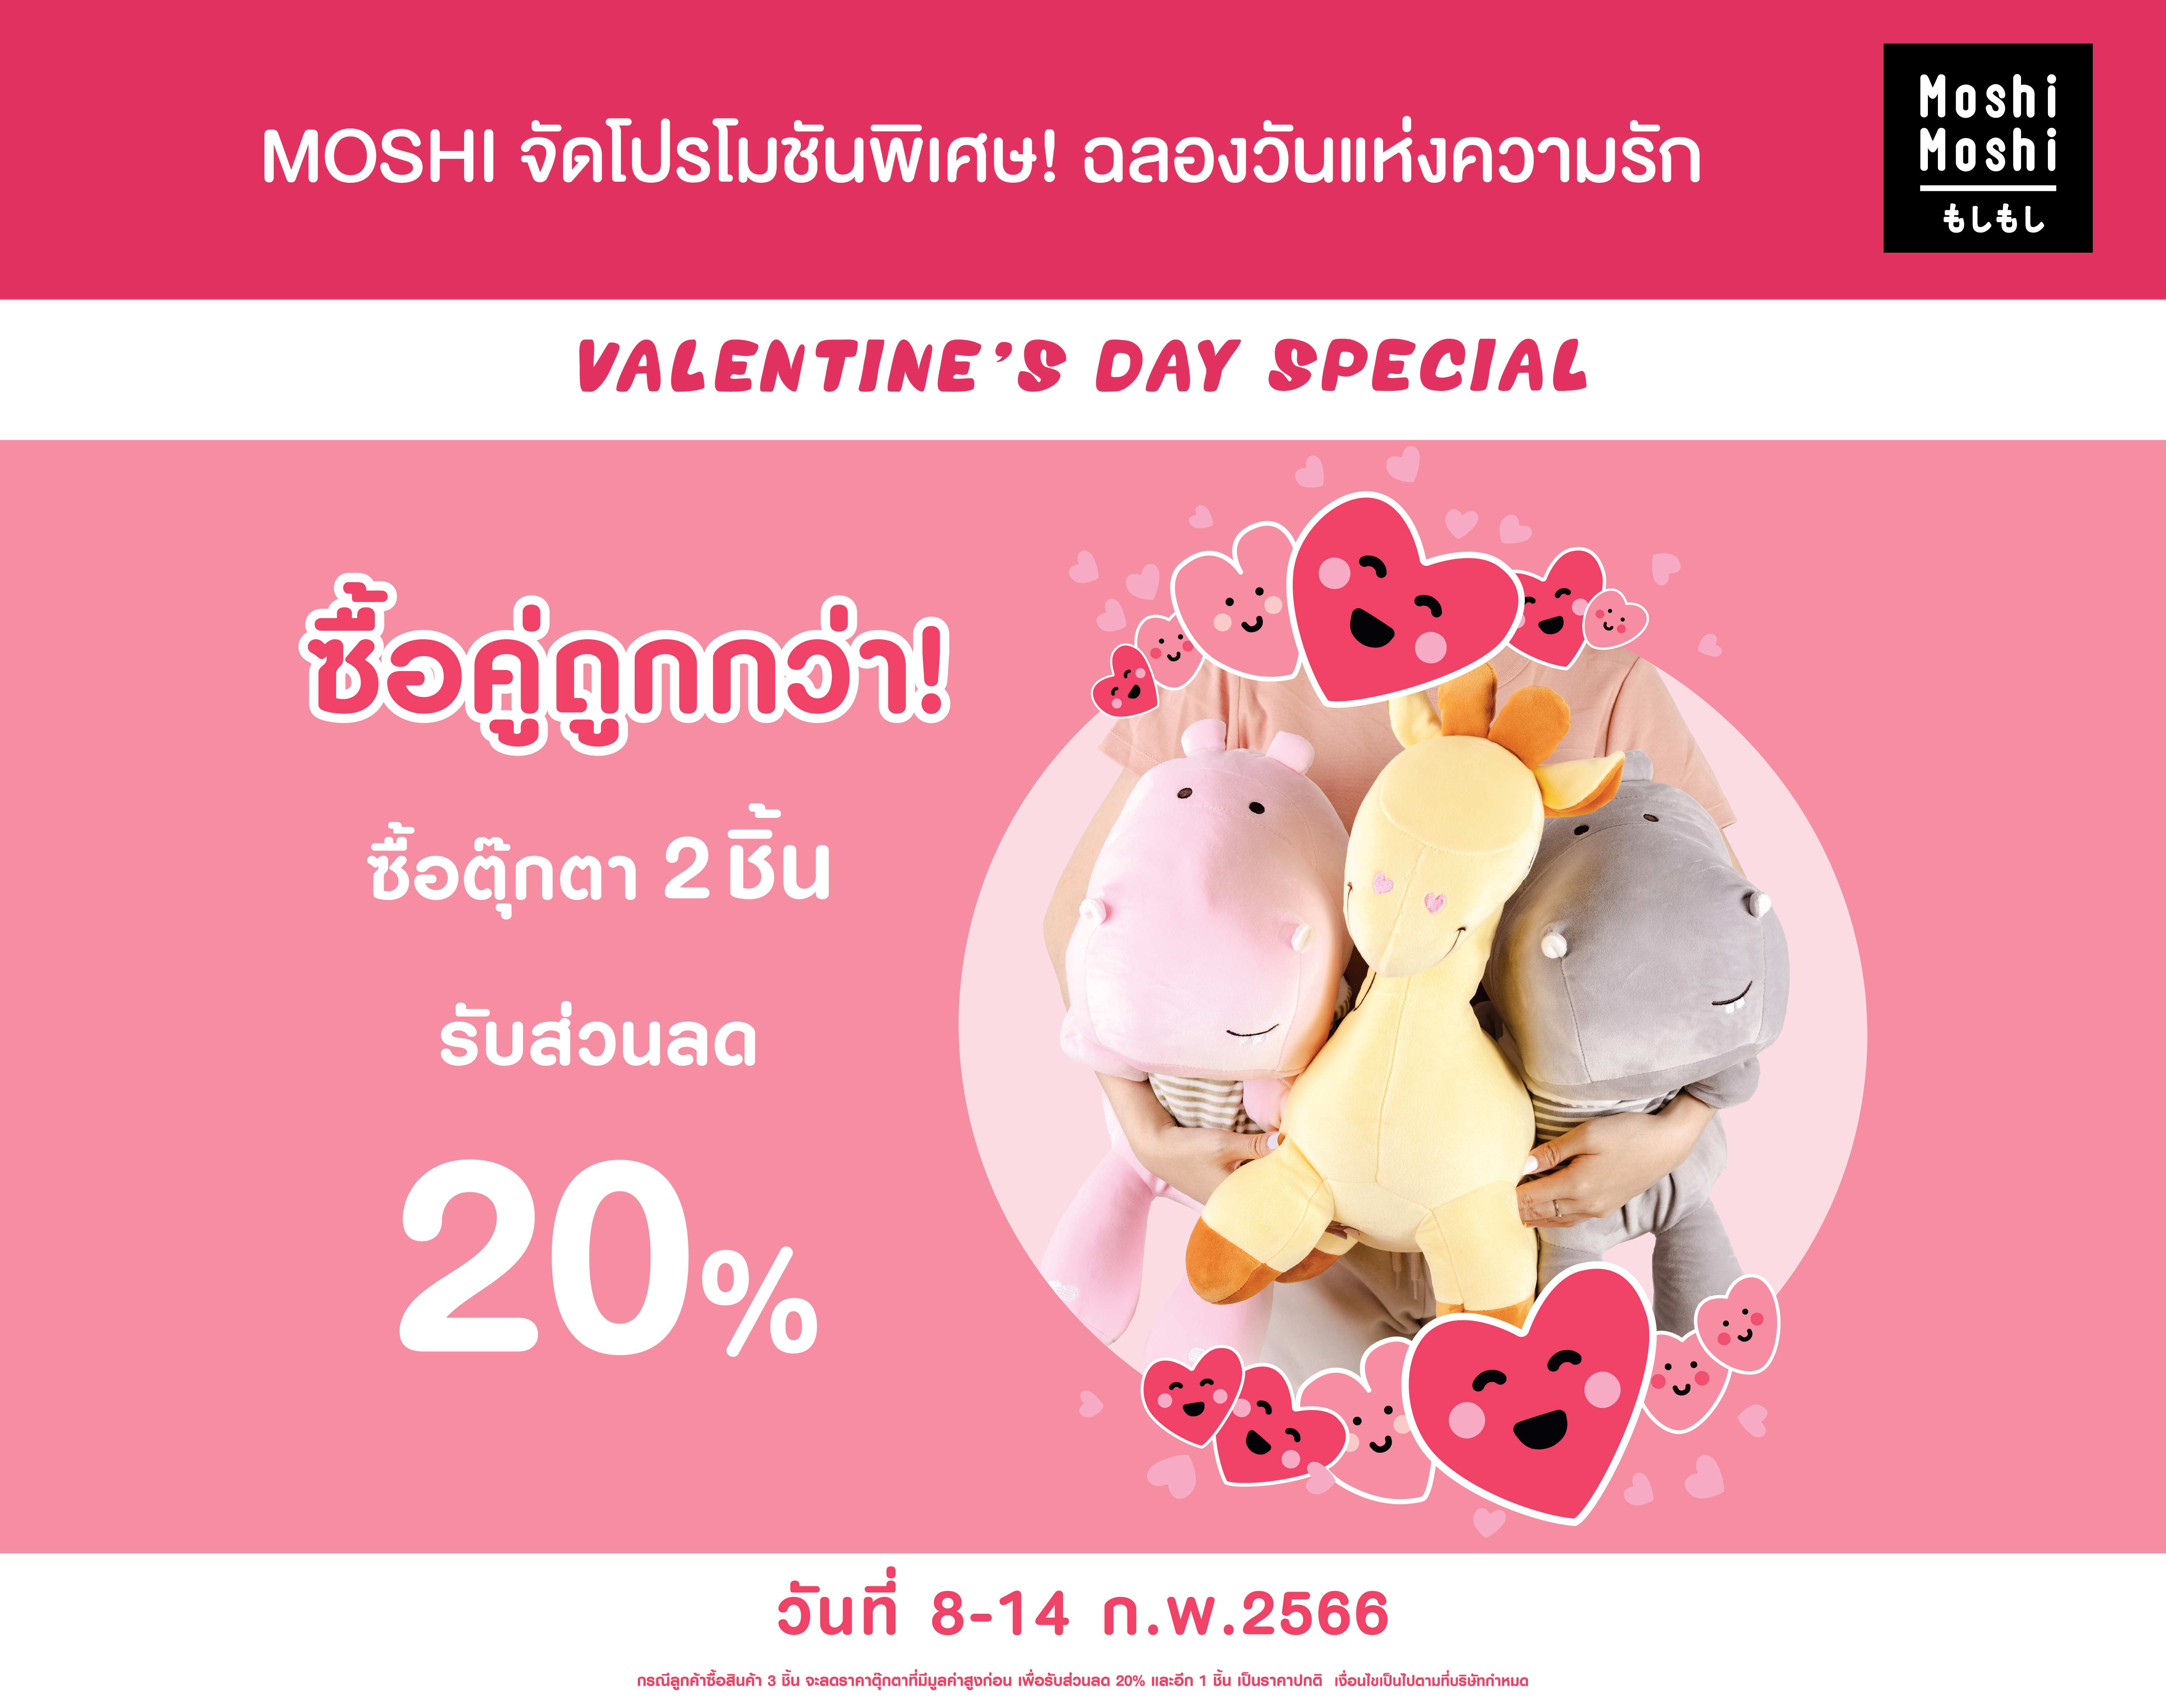 MOSHI จัดโปรโมชันฉลองวันแห่งความรัก ซื้อตุ๊กตา 2 ชิ้น รับส่วนลด 20%